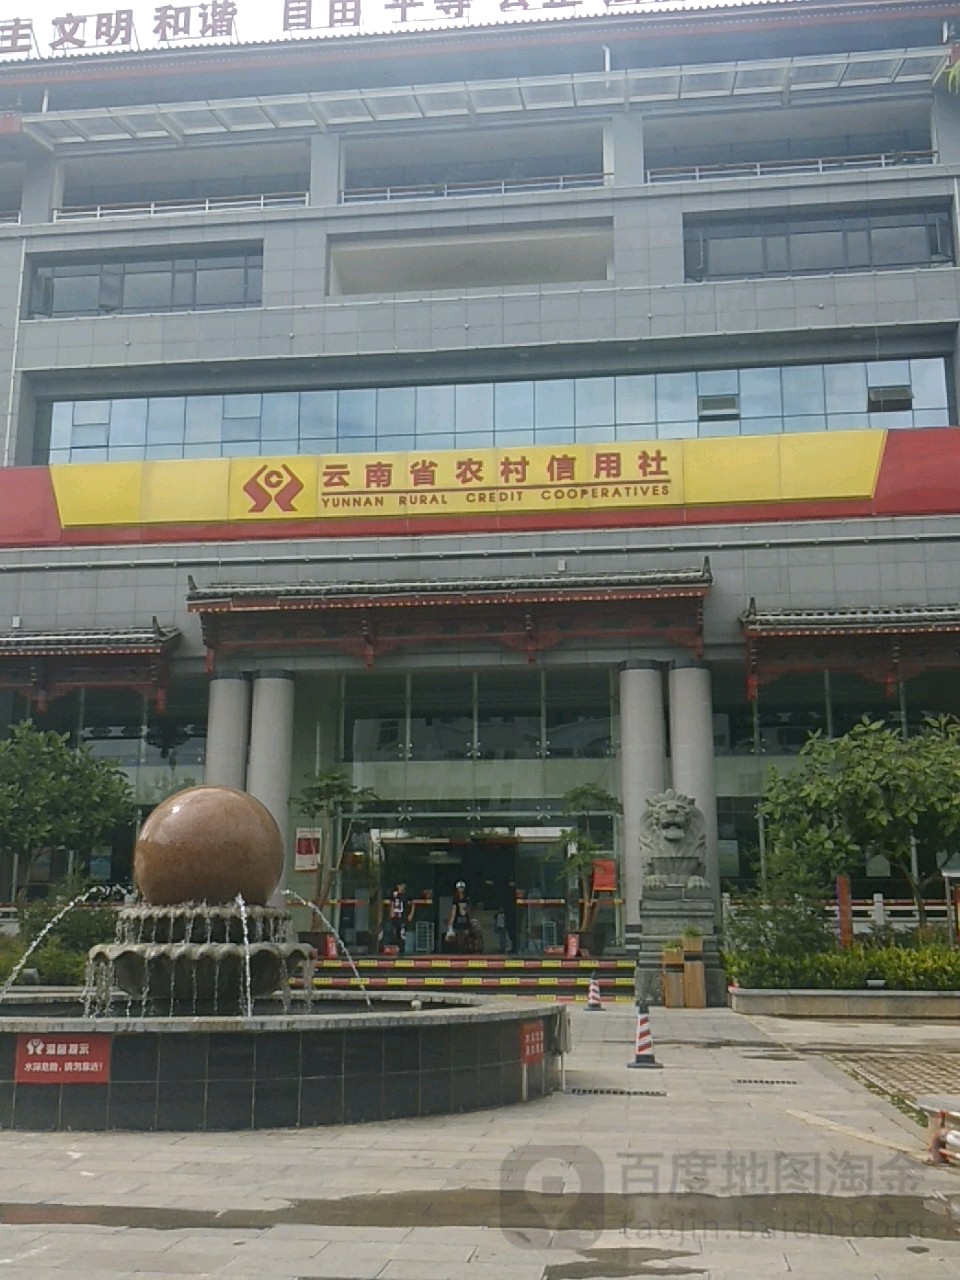 丽江古城农村商业银行(总行营业部)